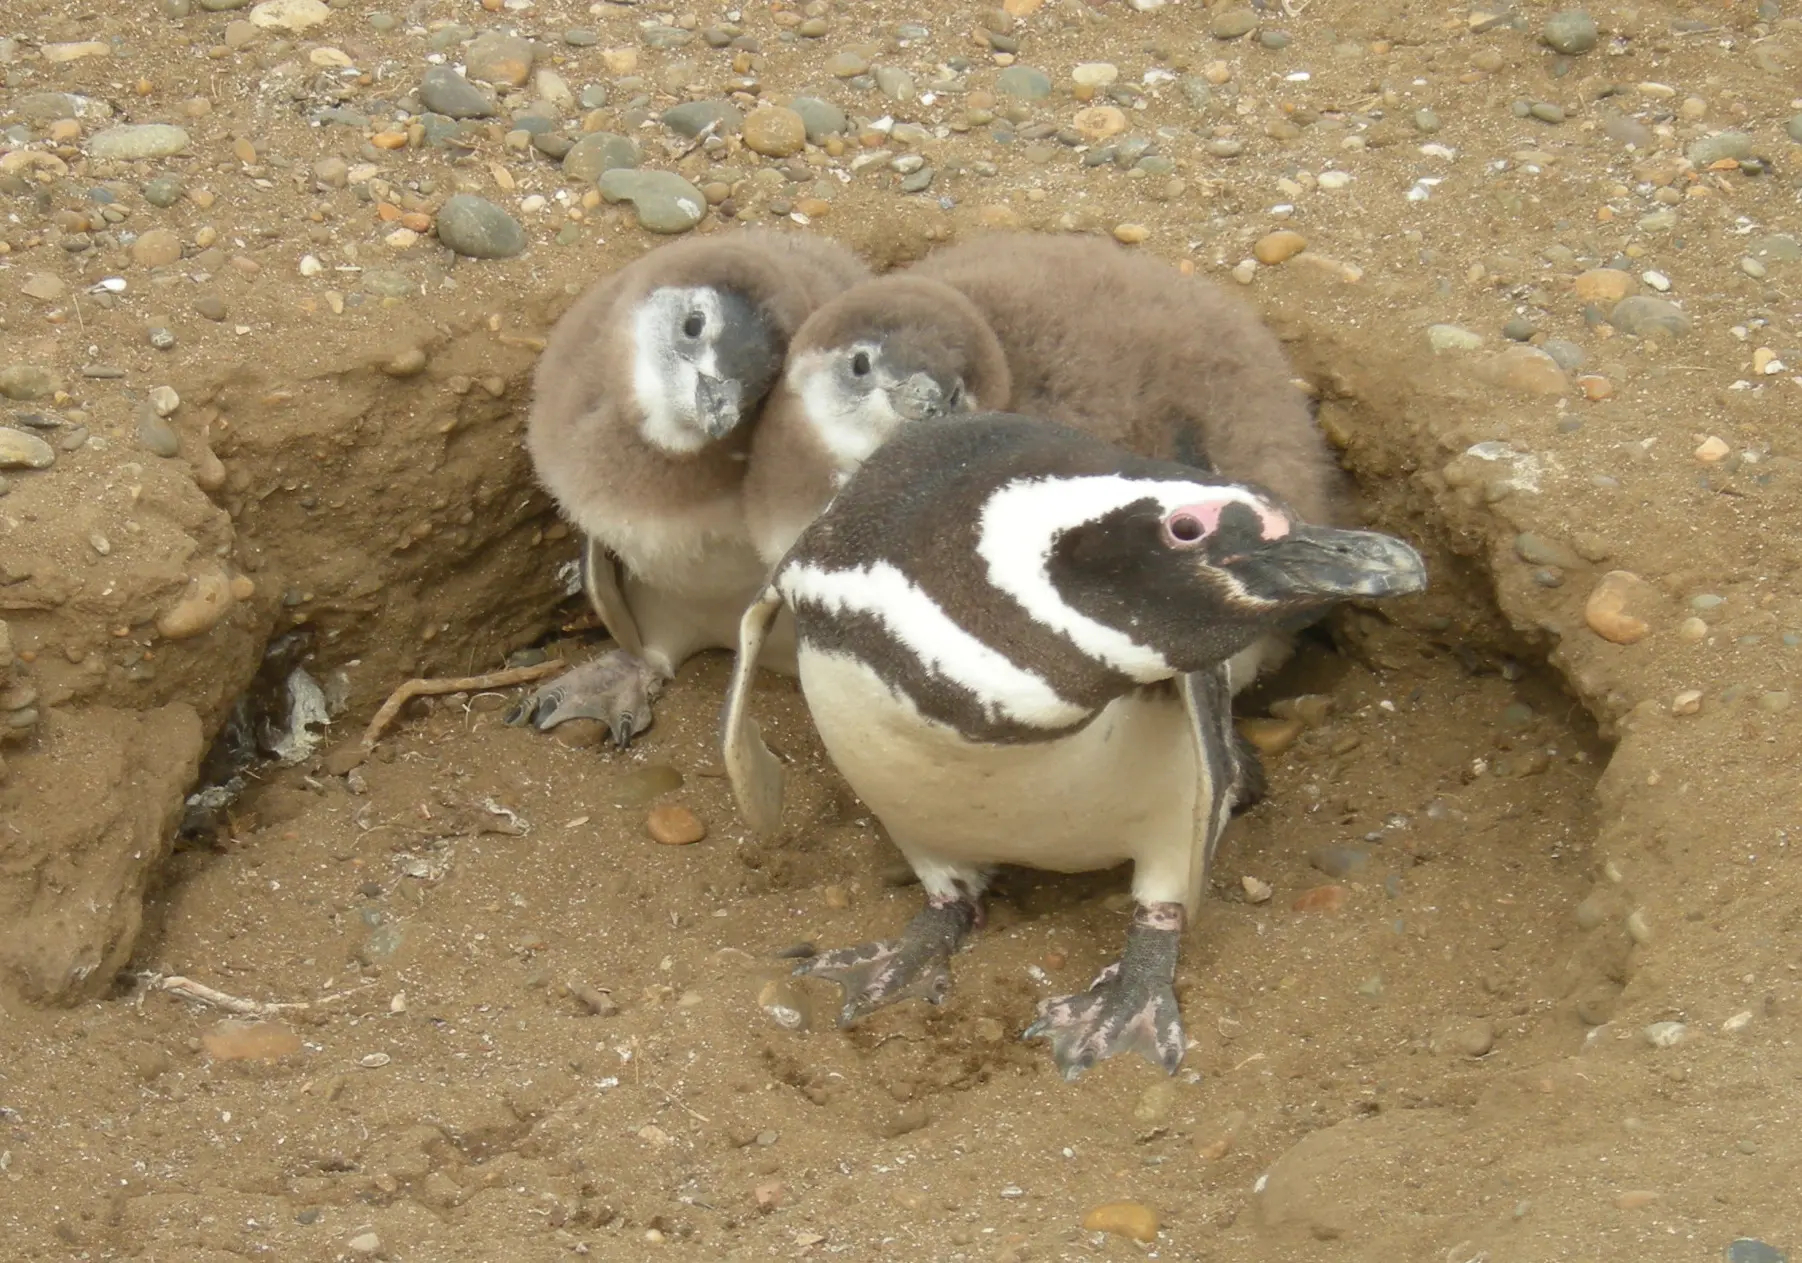 colonias de nidificacion de pinguinos en las costas patagonicas resumen - Qué quiere decir los pingüinos viven en colonias